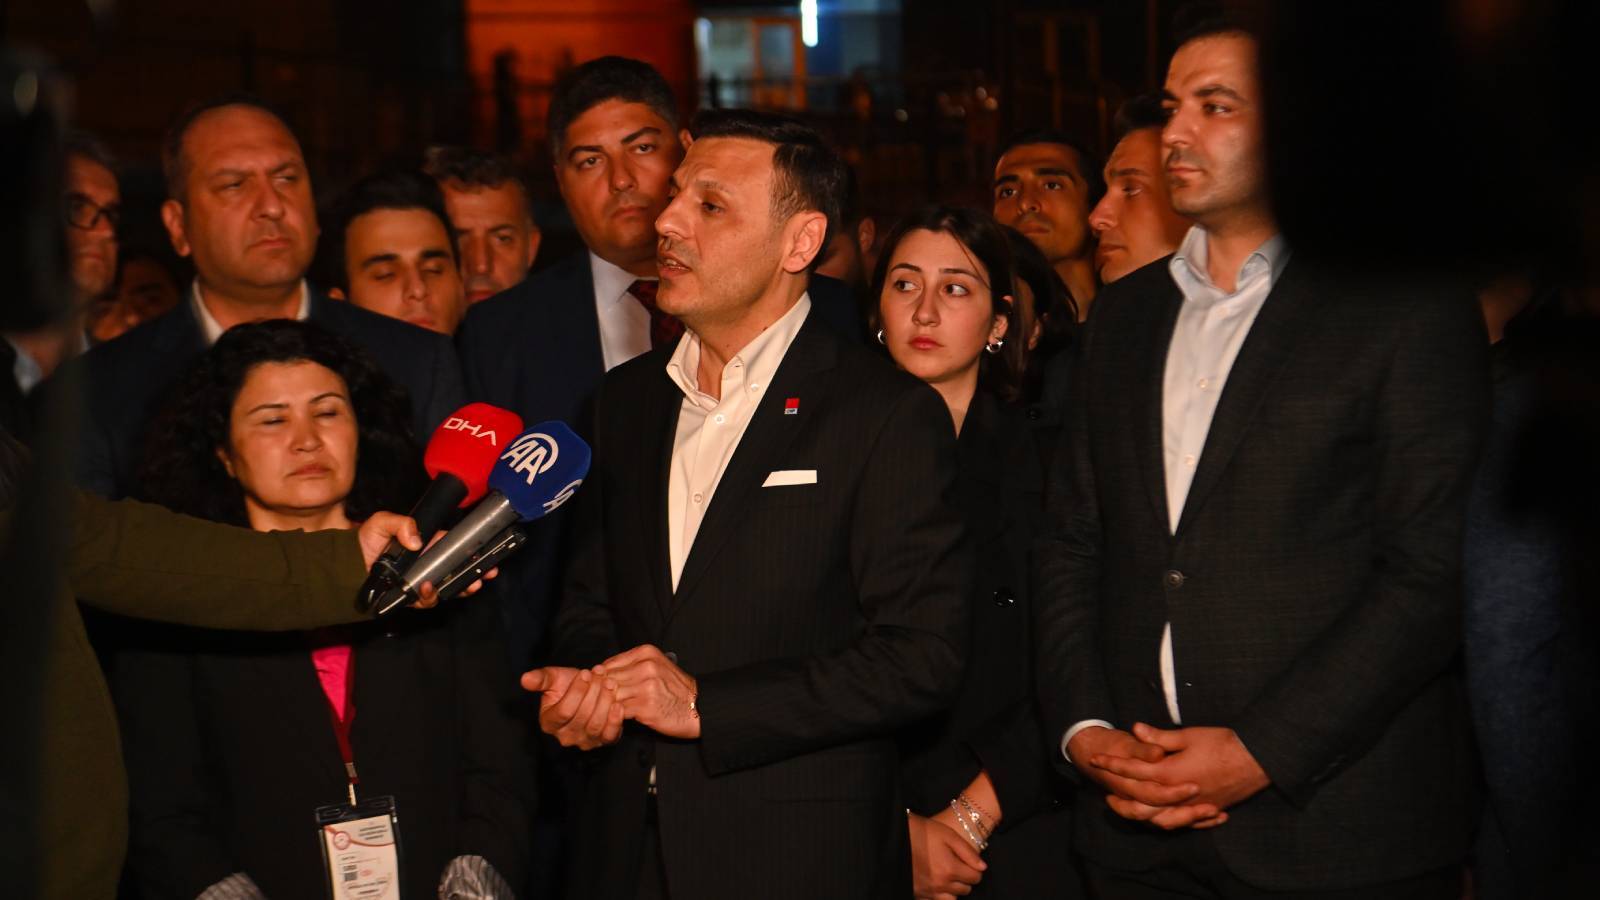 CHP İstanbul İl Başkanı Çelik, Yüksek Seçim Kurulu'nda: İtirazımız reddedilmiş, çifte standart var